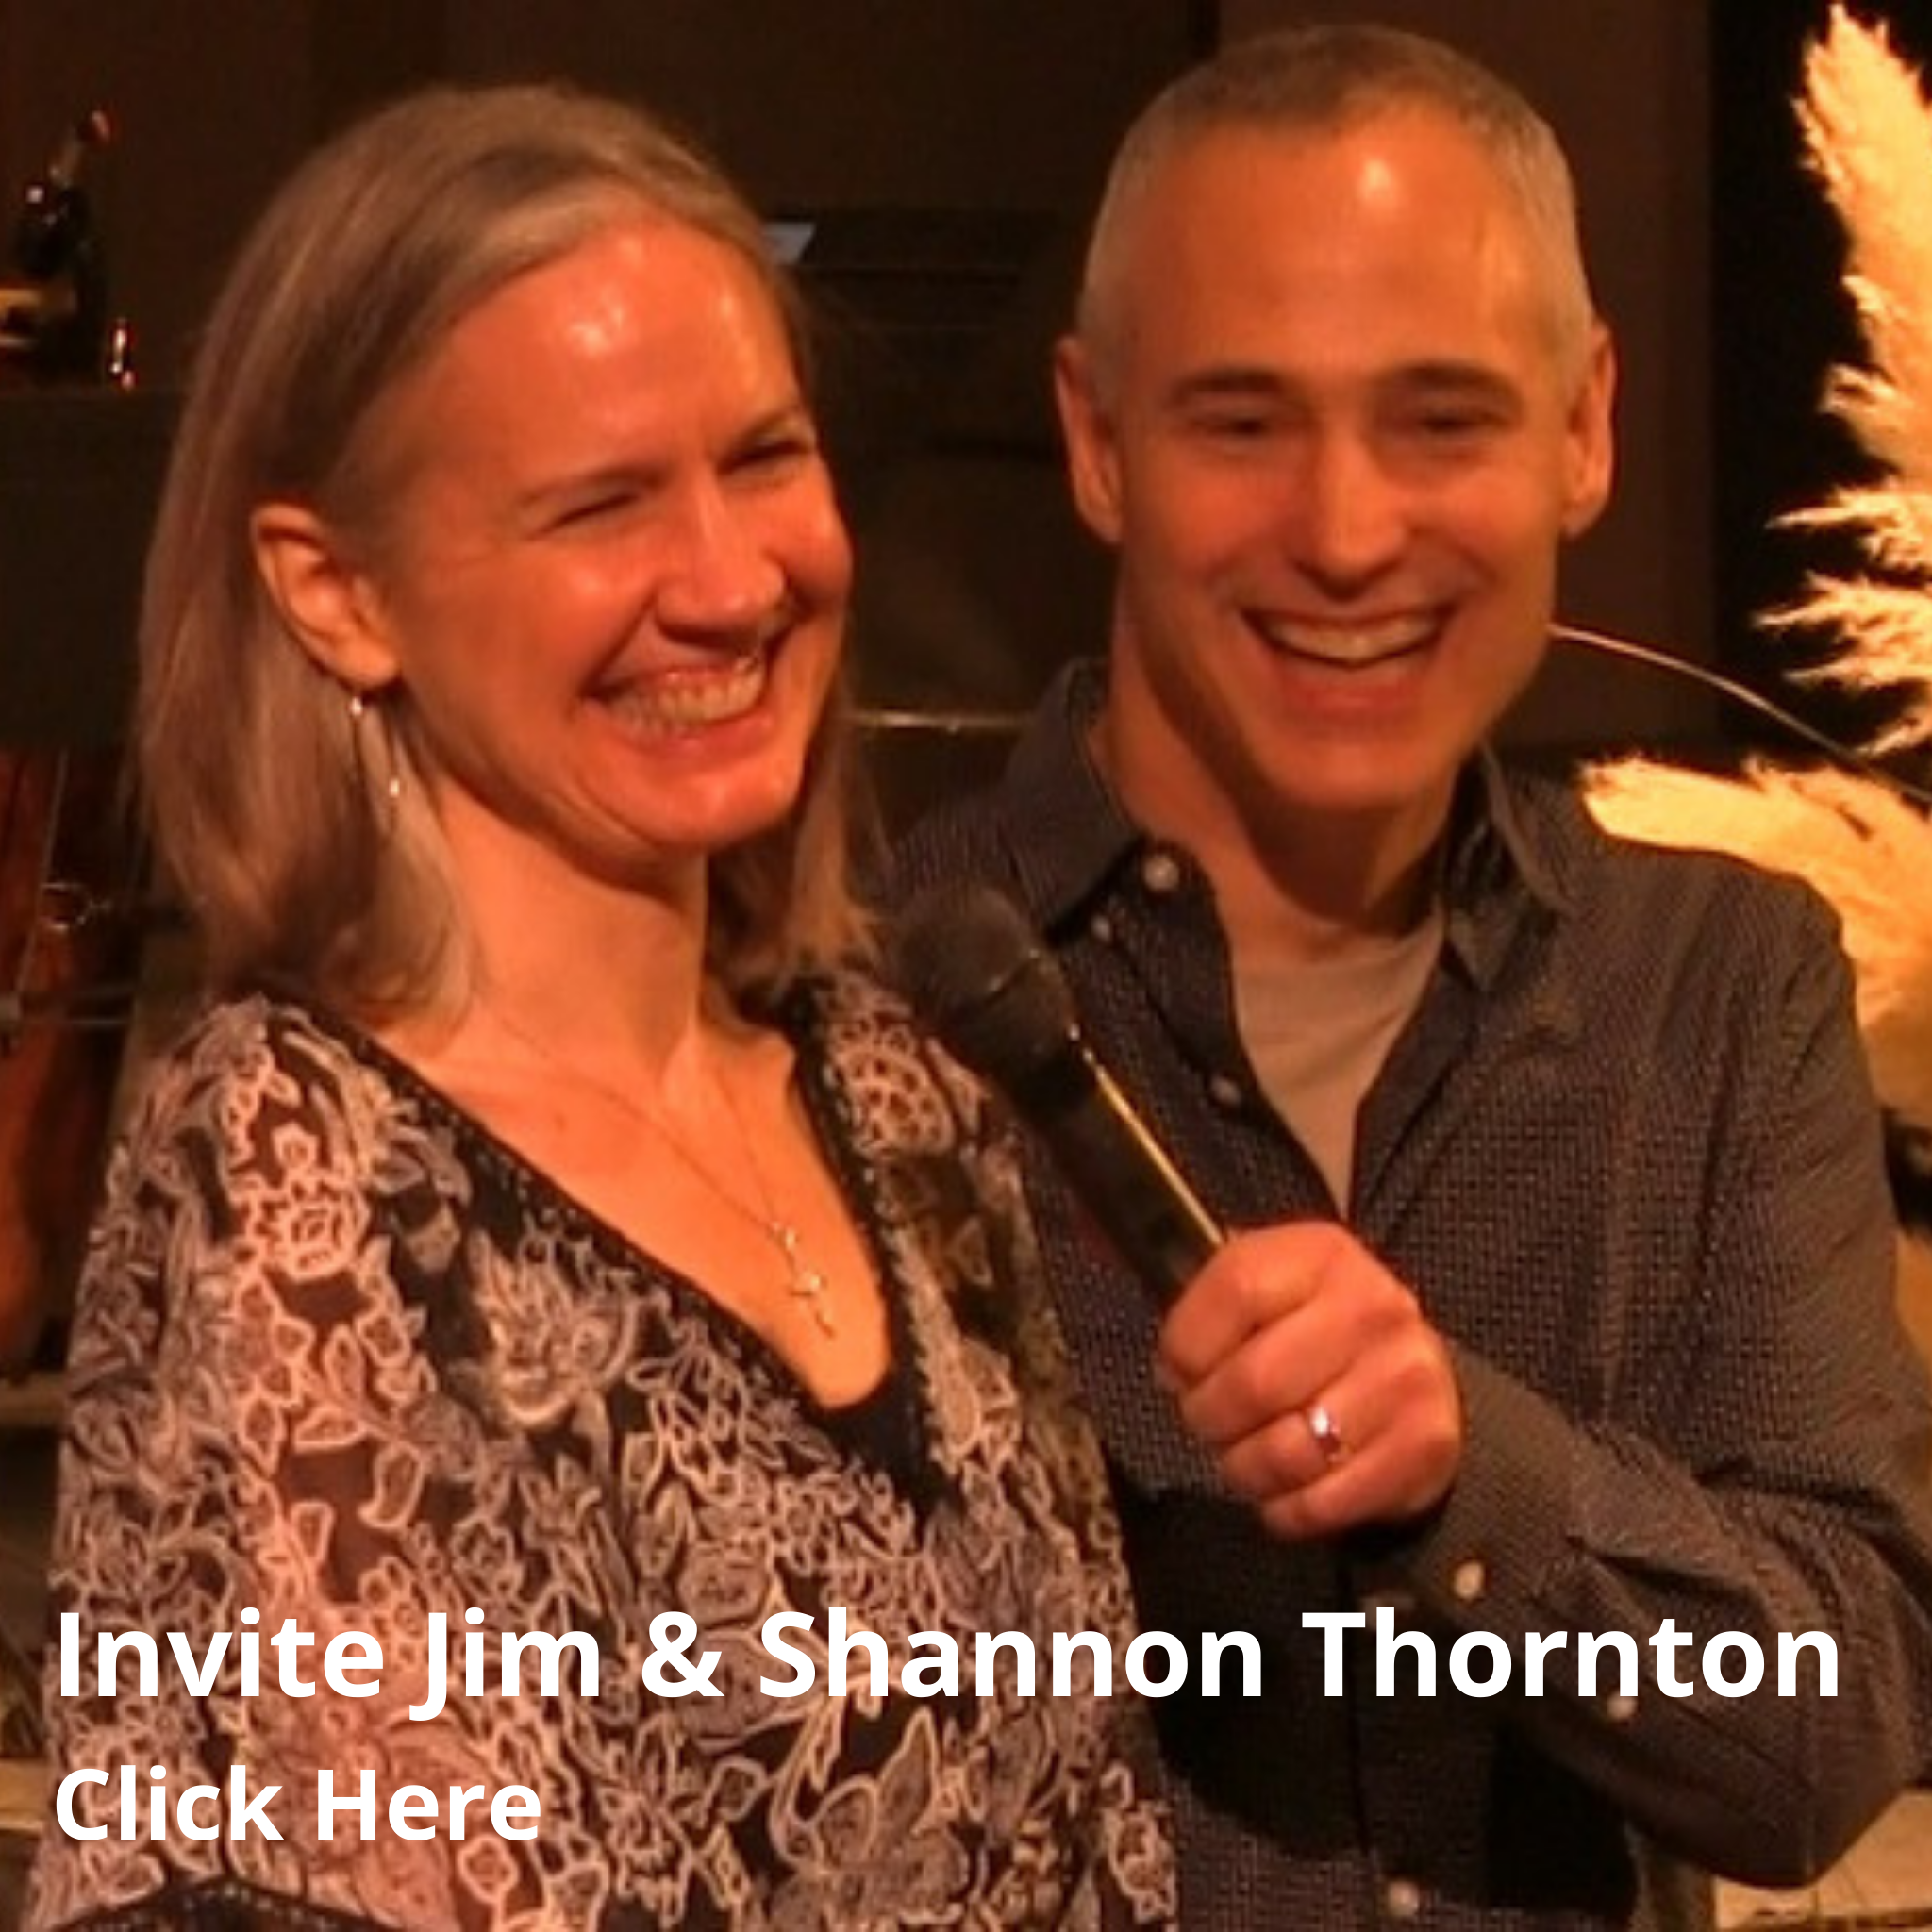 Invite Jim & Shannon